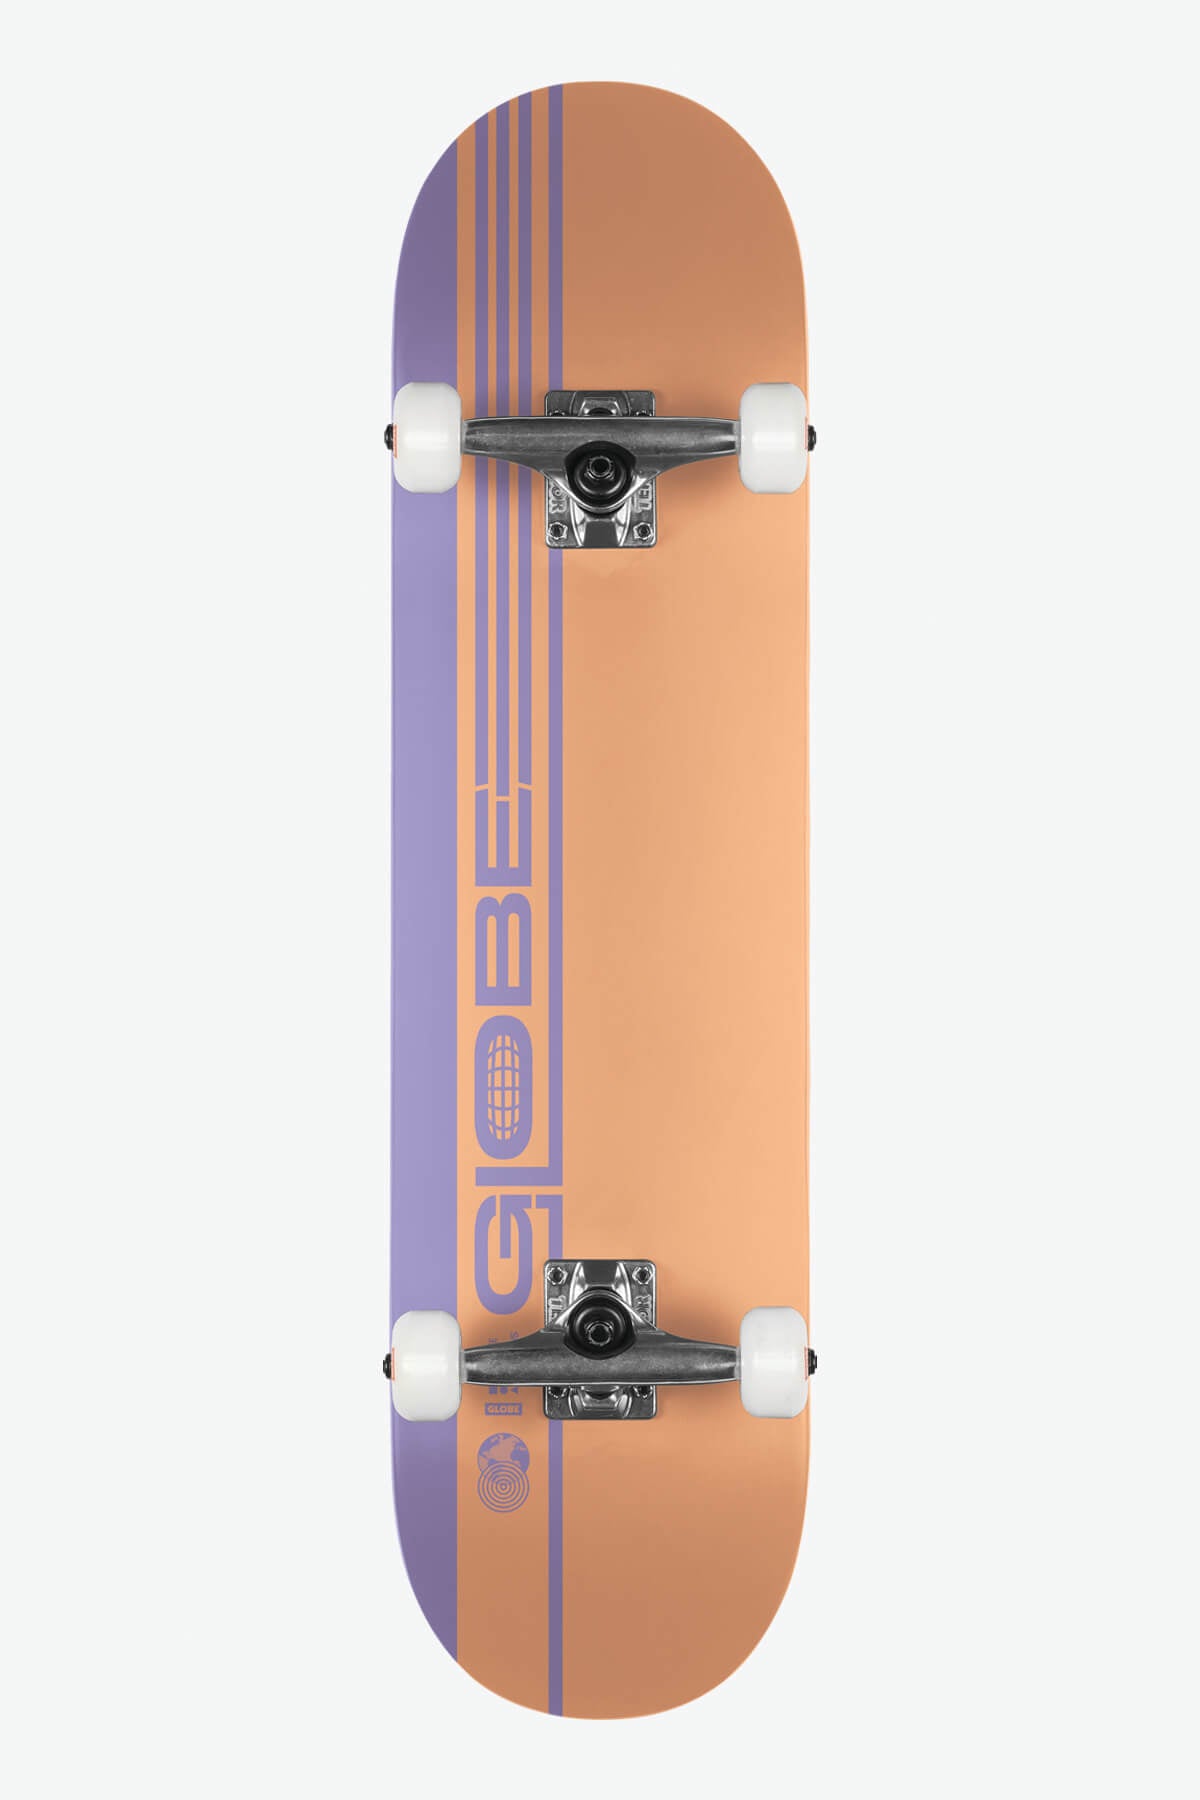 Globe - G0 Strype Hard - Dusty Orange/Lavender - 7,75" Compleet Skateboard